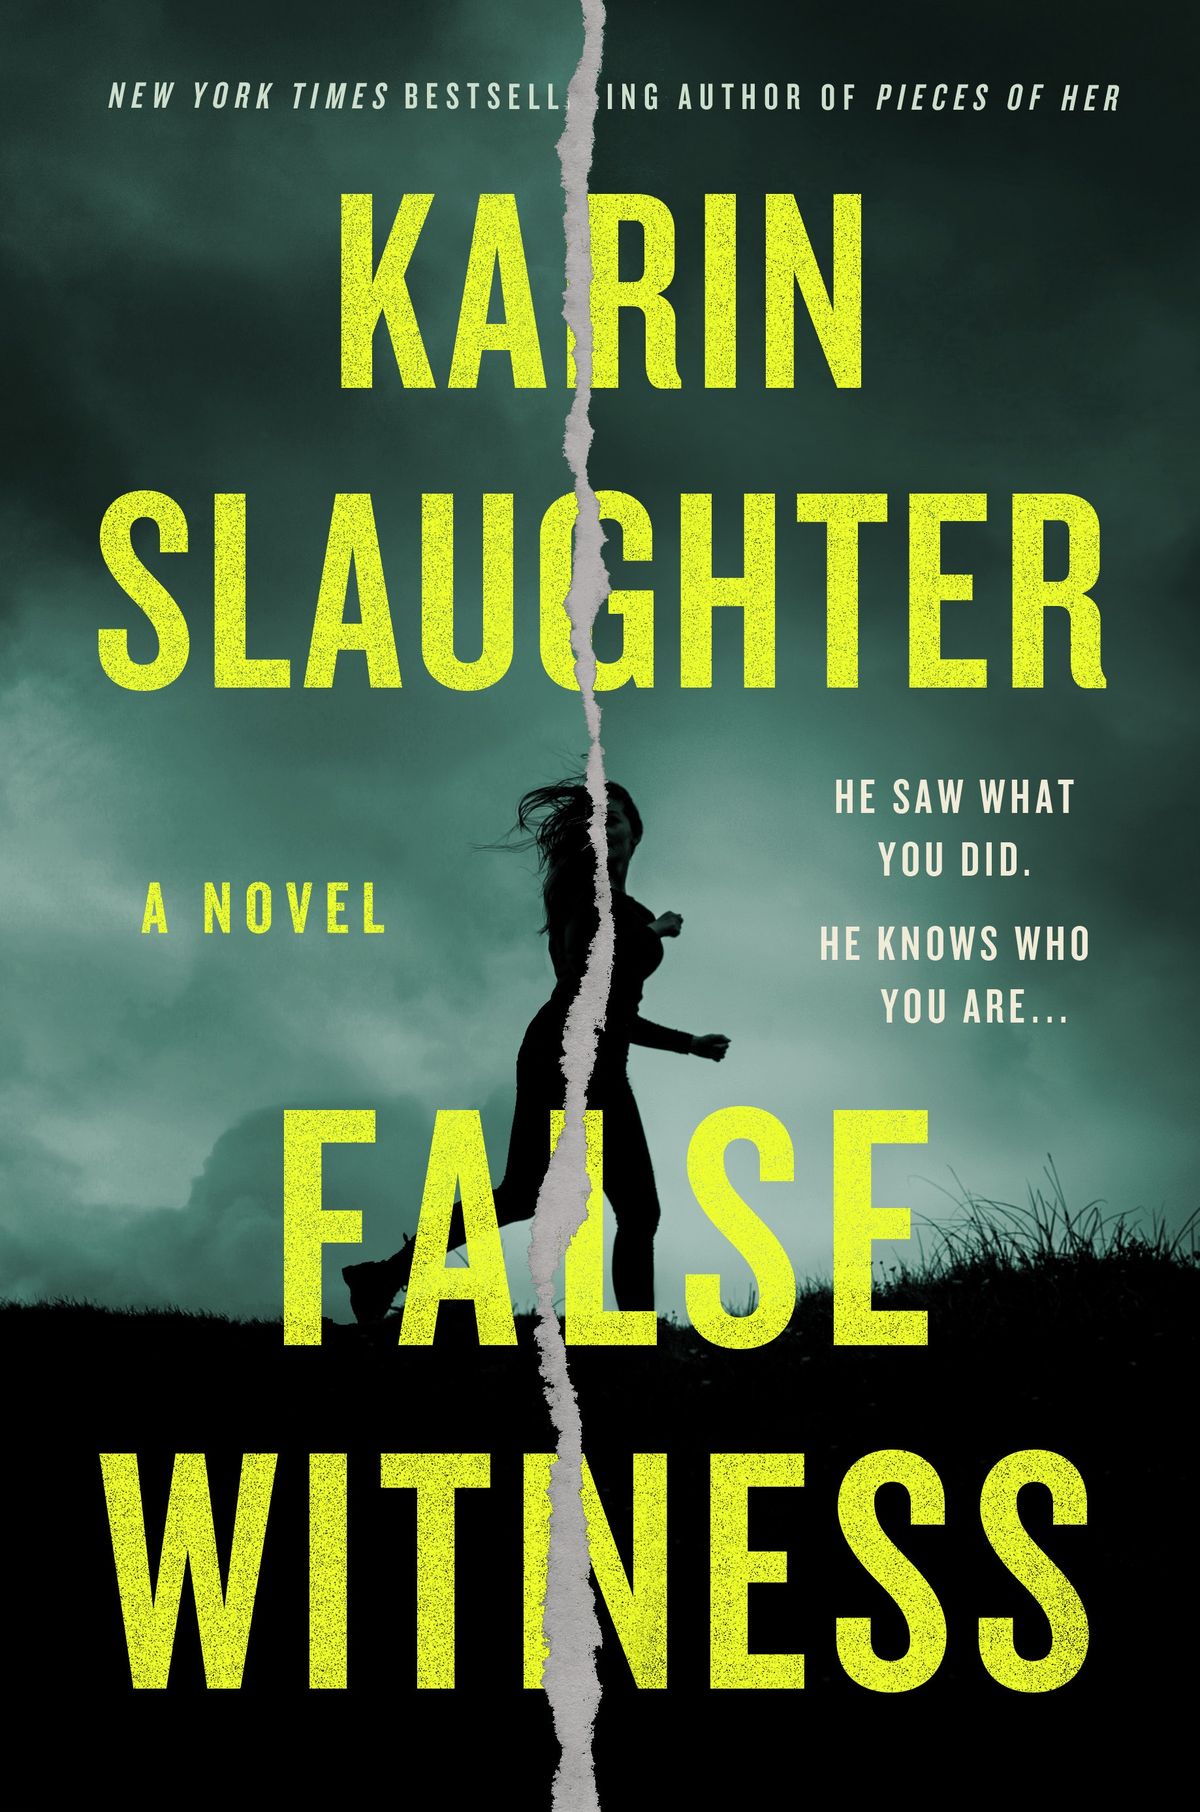 Karin Slaughters falske vitne er ute neste måned - men du kan begynne å lese det nå